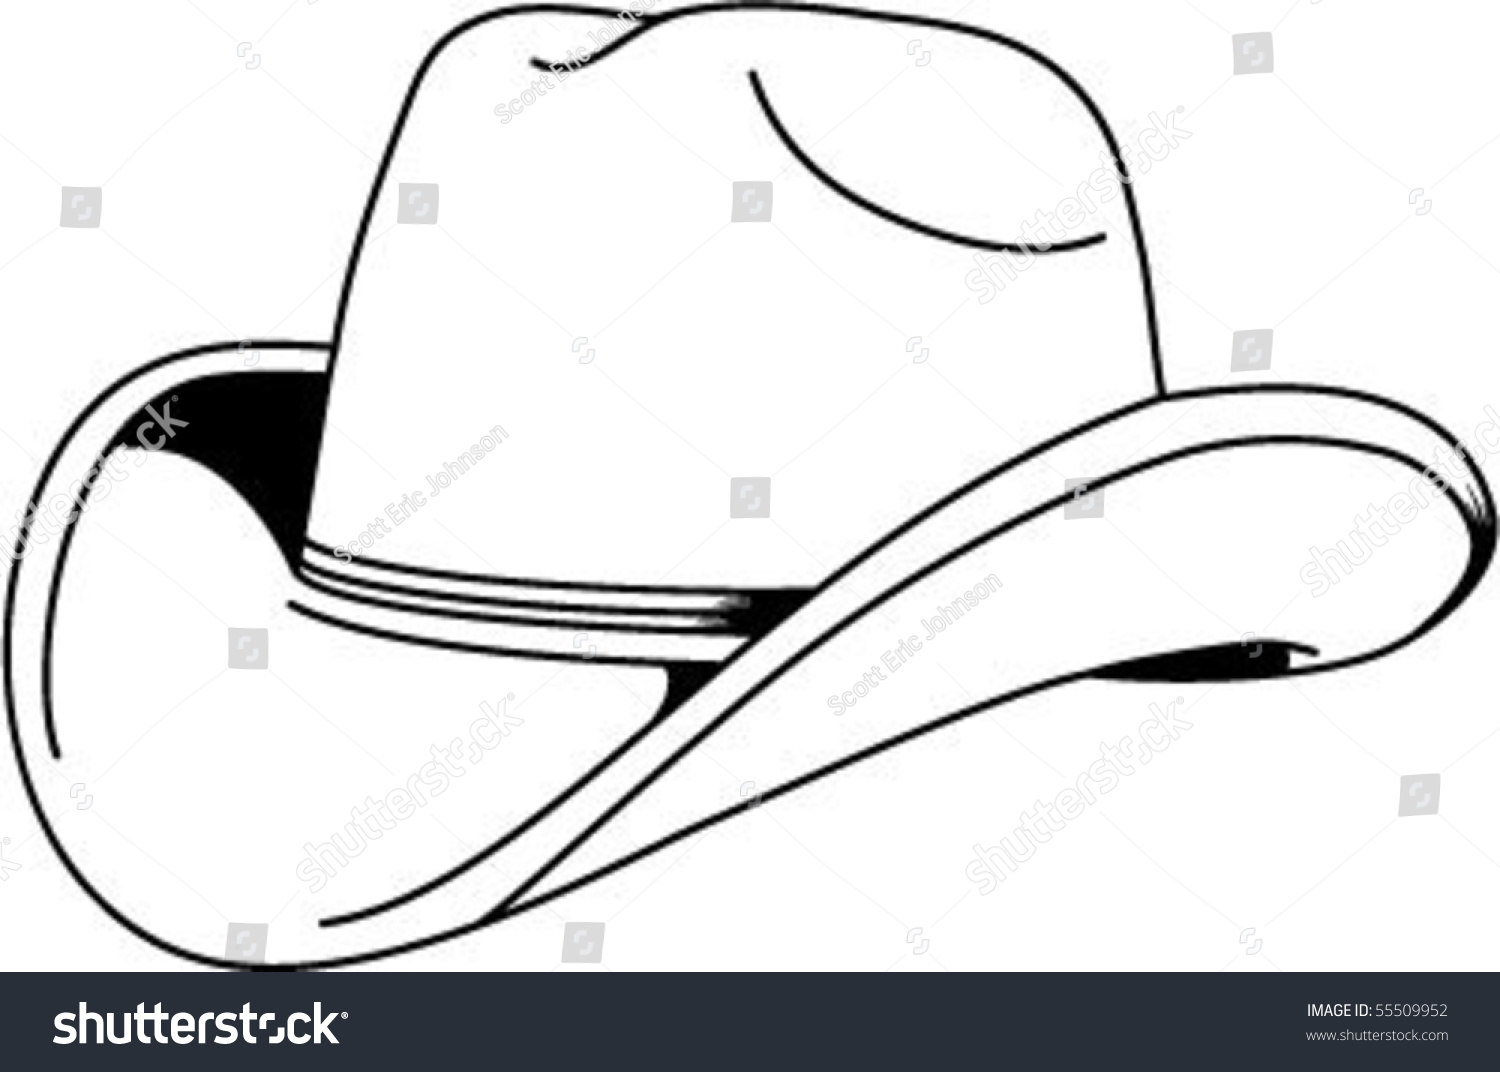 Рисунок пельменя в шляпе